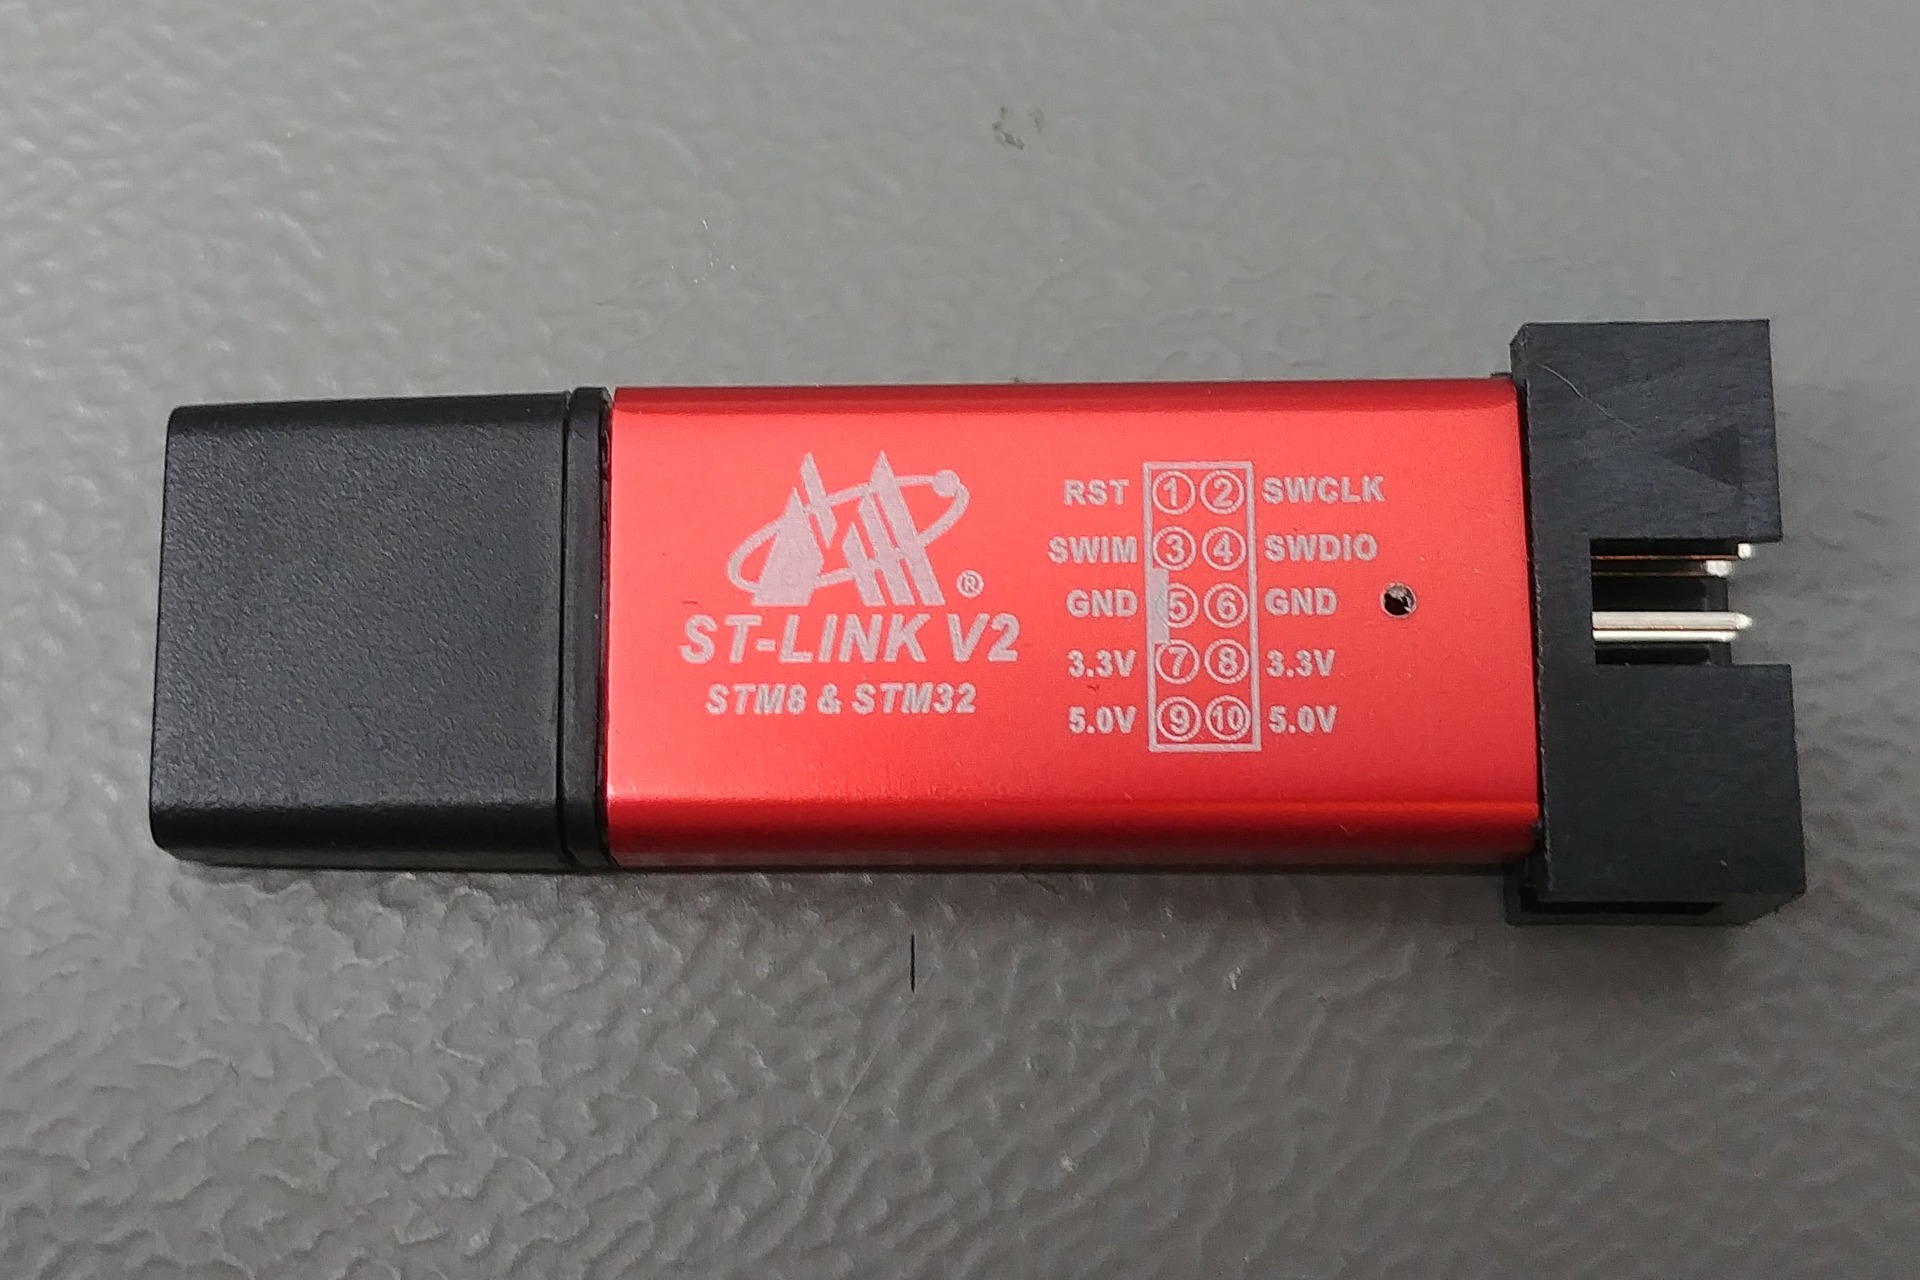 ST-LINK V2 Debugger: Case